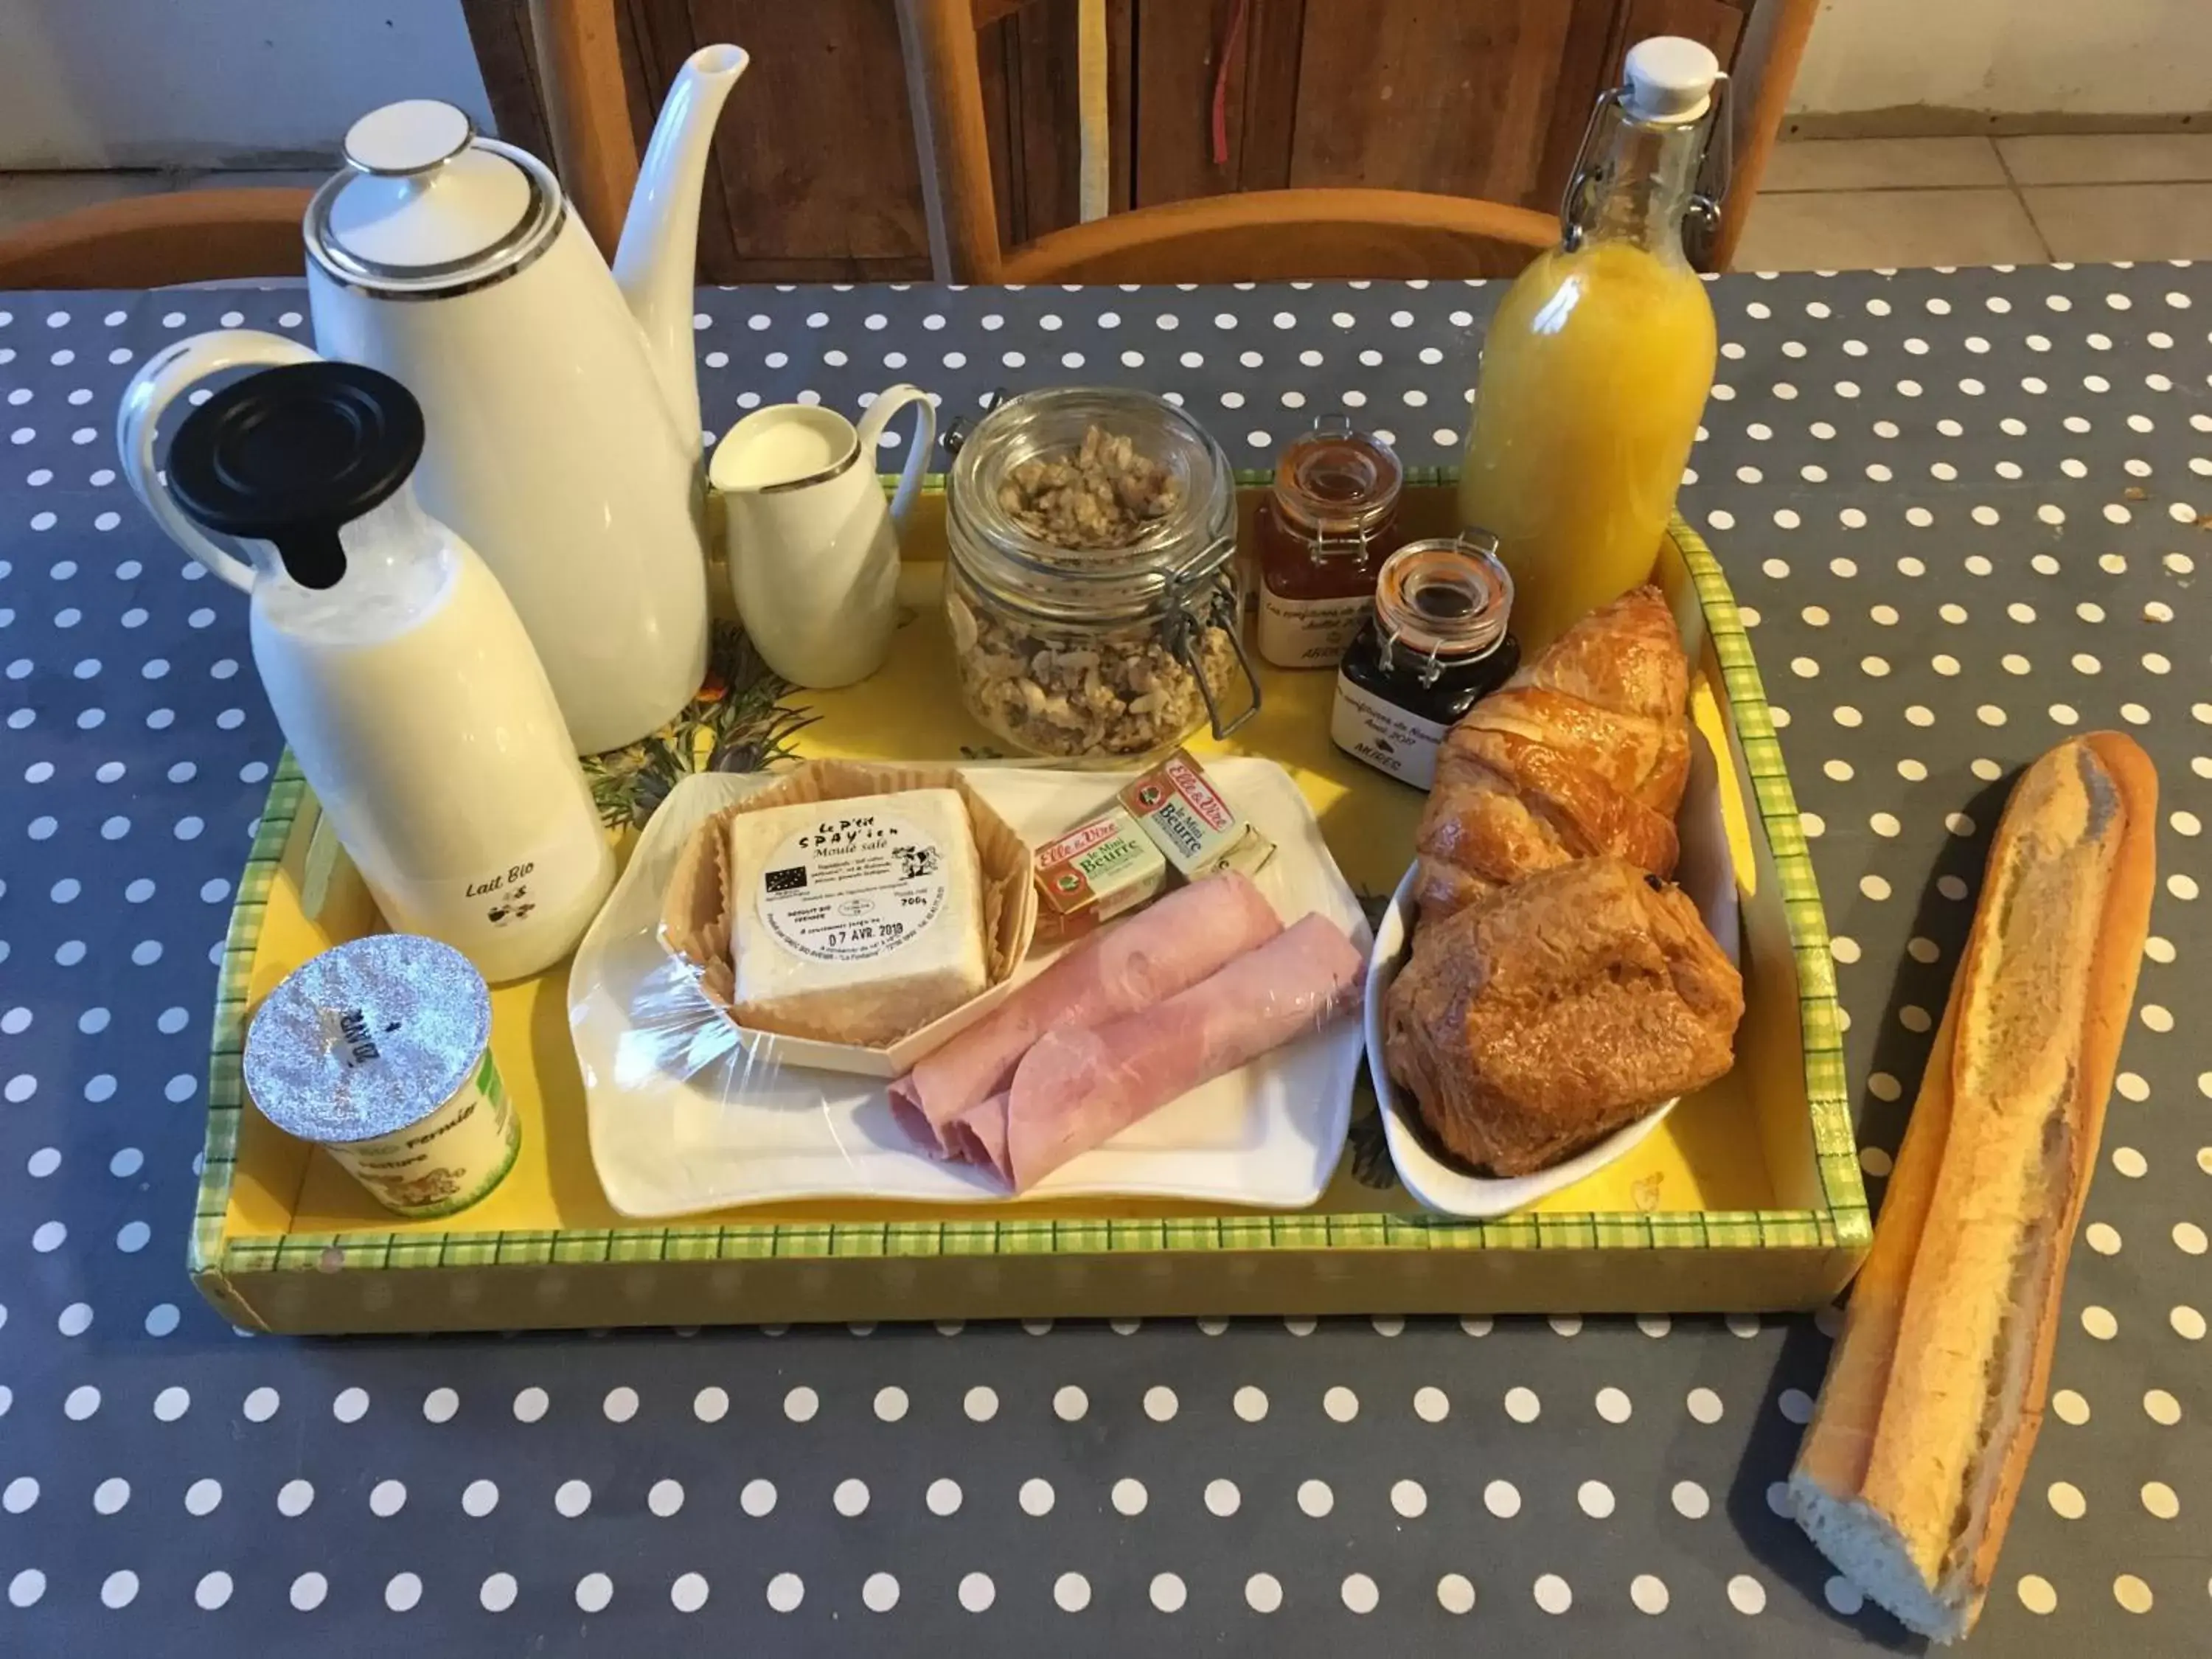 Breakfast in La Marchanderie